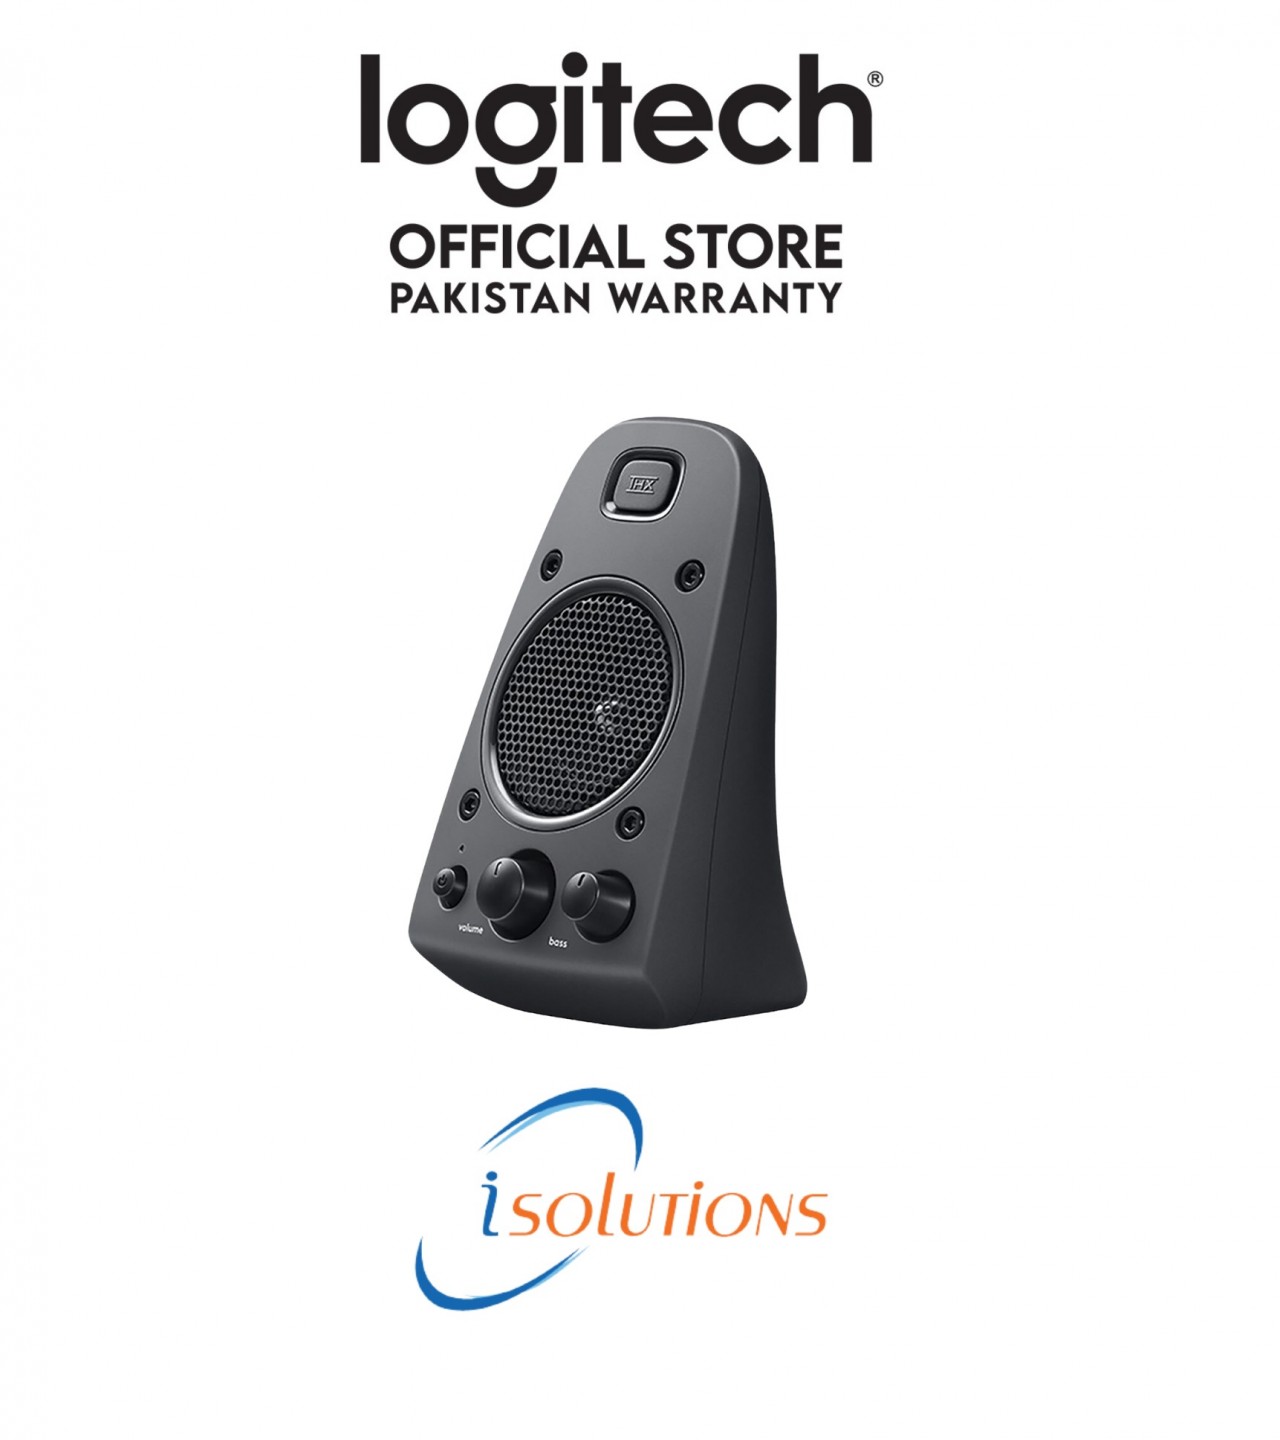 Z625 powerful thx speakers - Logitech Pakistan